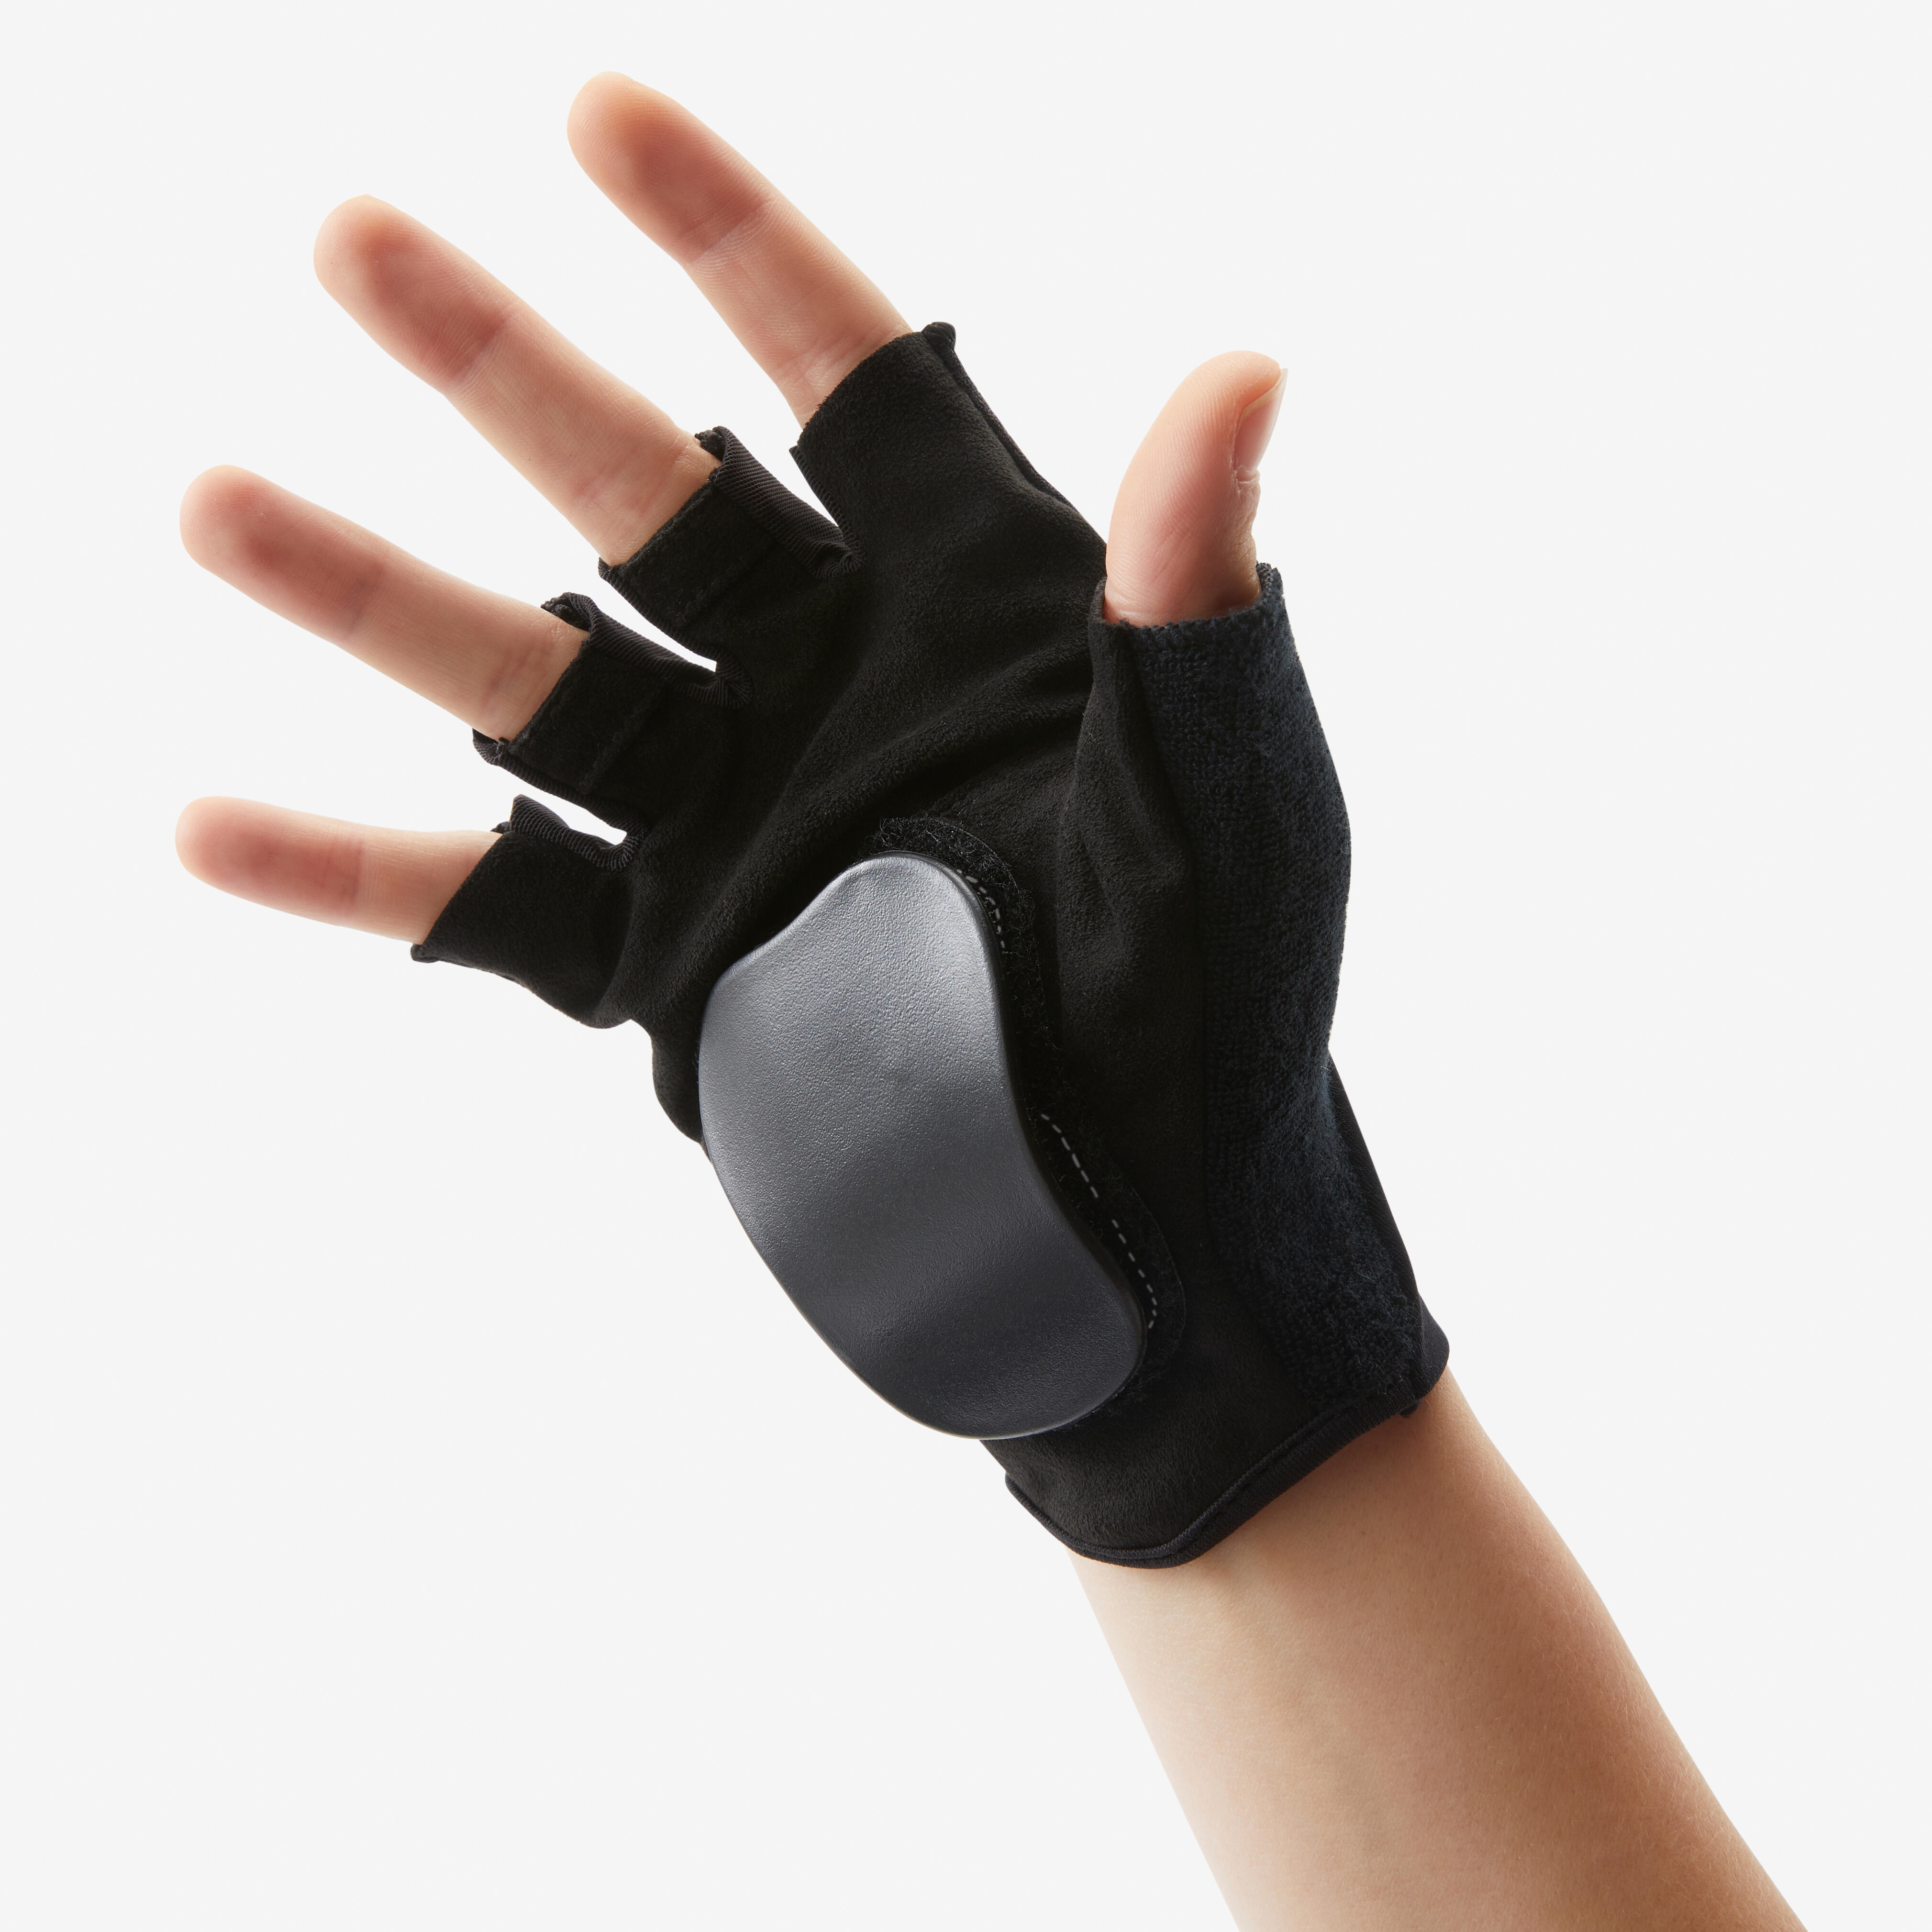 OXELO Protektoren Schoner Inliner Handschuhe MF900 schwarz XL